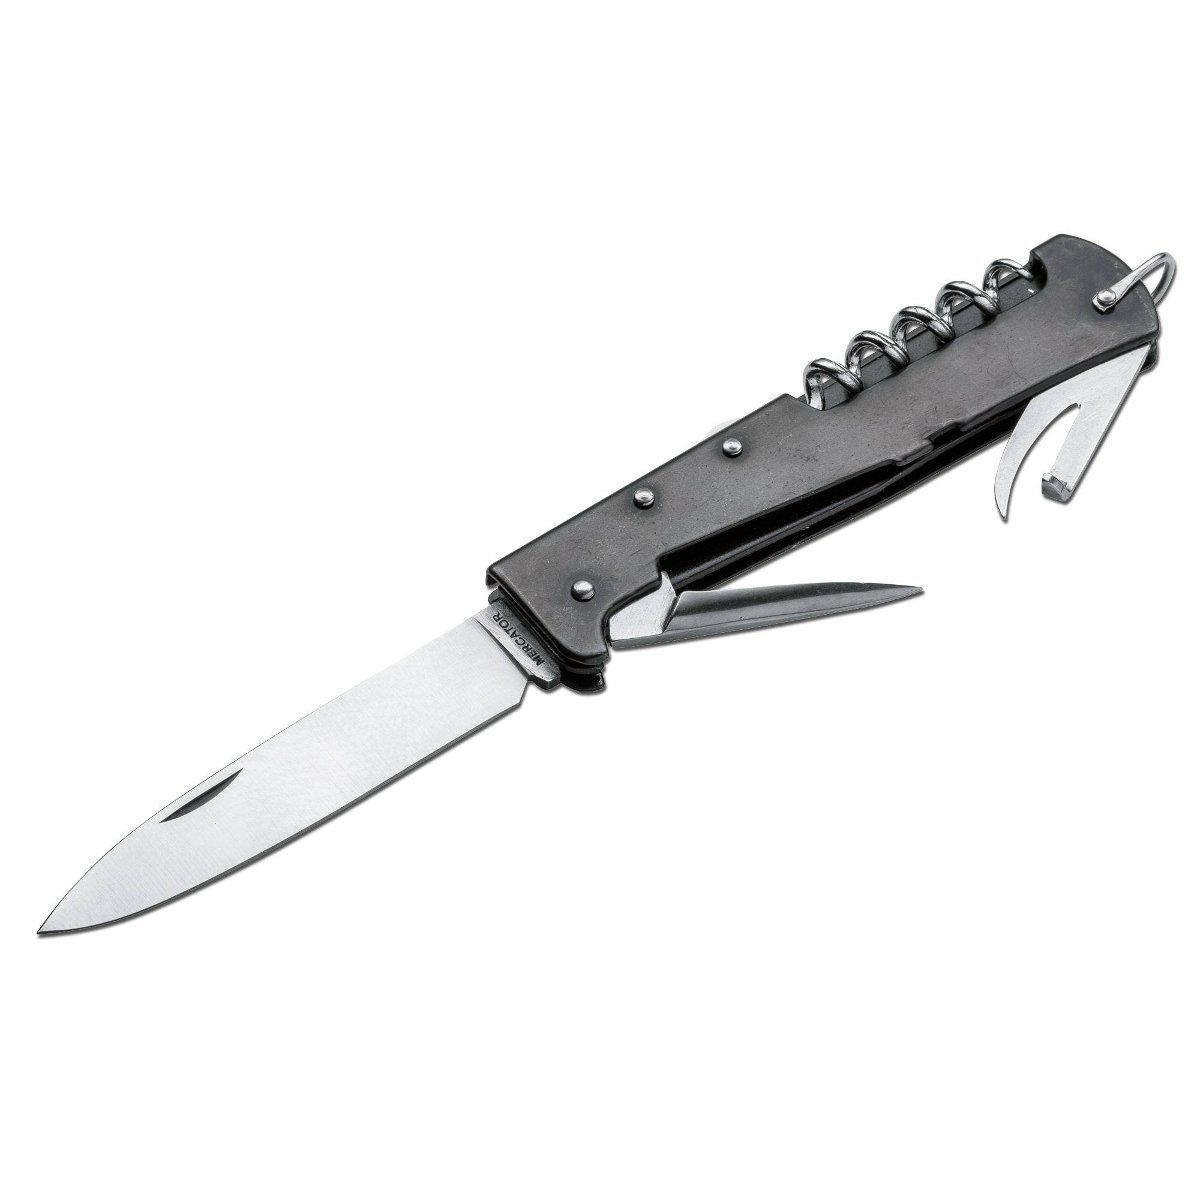 Otter Messer Taschenmesser groß brüniert, Stahl Carbonstahl, Multi Backlock Klinge Mercator-Messer